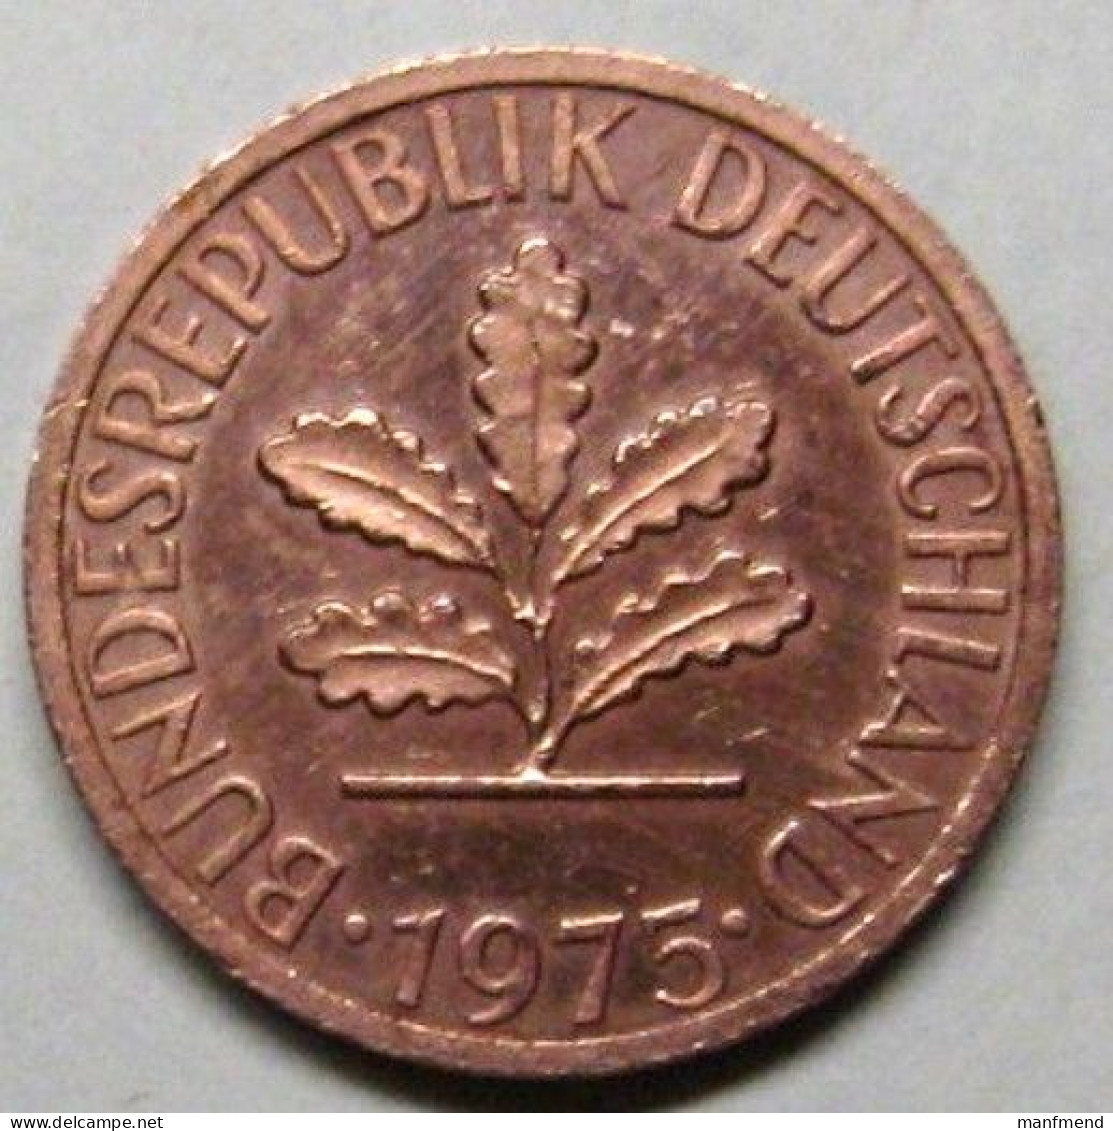 Germany - 1975 - KM 105 - 1 Pfennig - Mintmark "J" / Hamburg - XF - Look Scans - 1 Pfennig